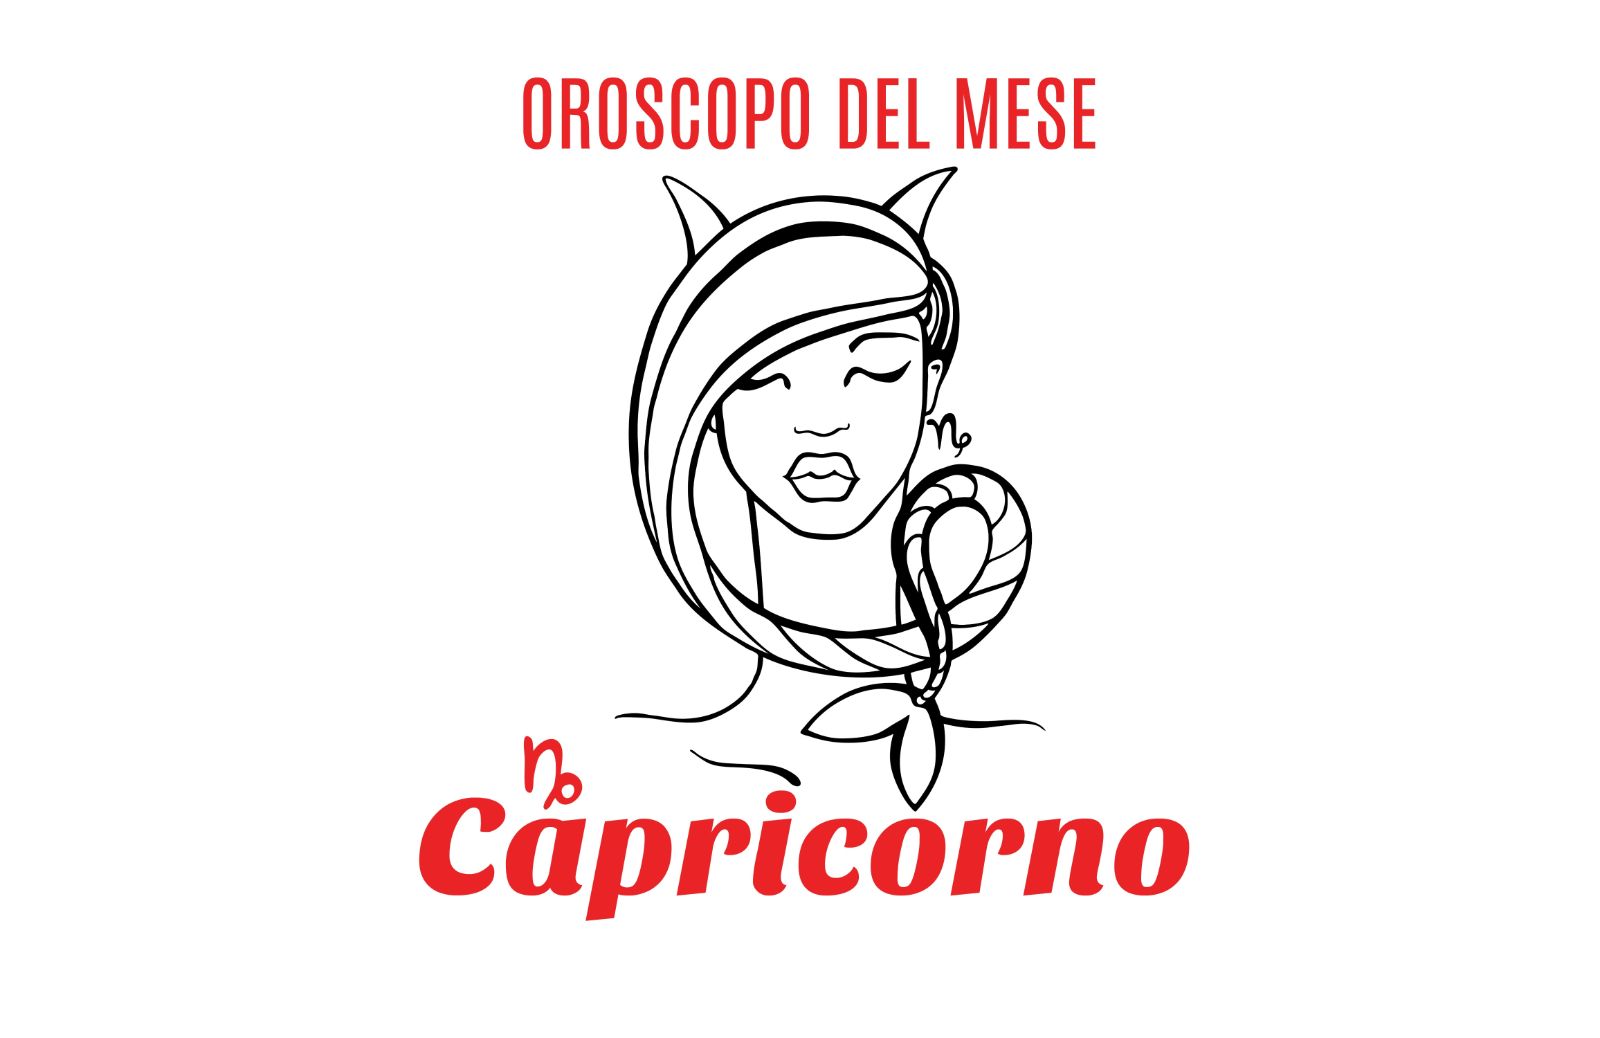 Oroscopo del mese: Capricorno - maggio 2019